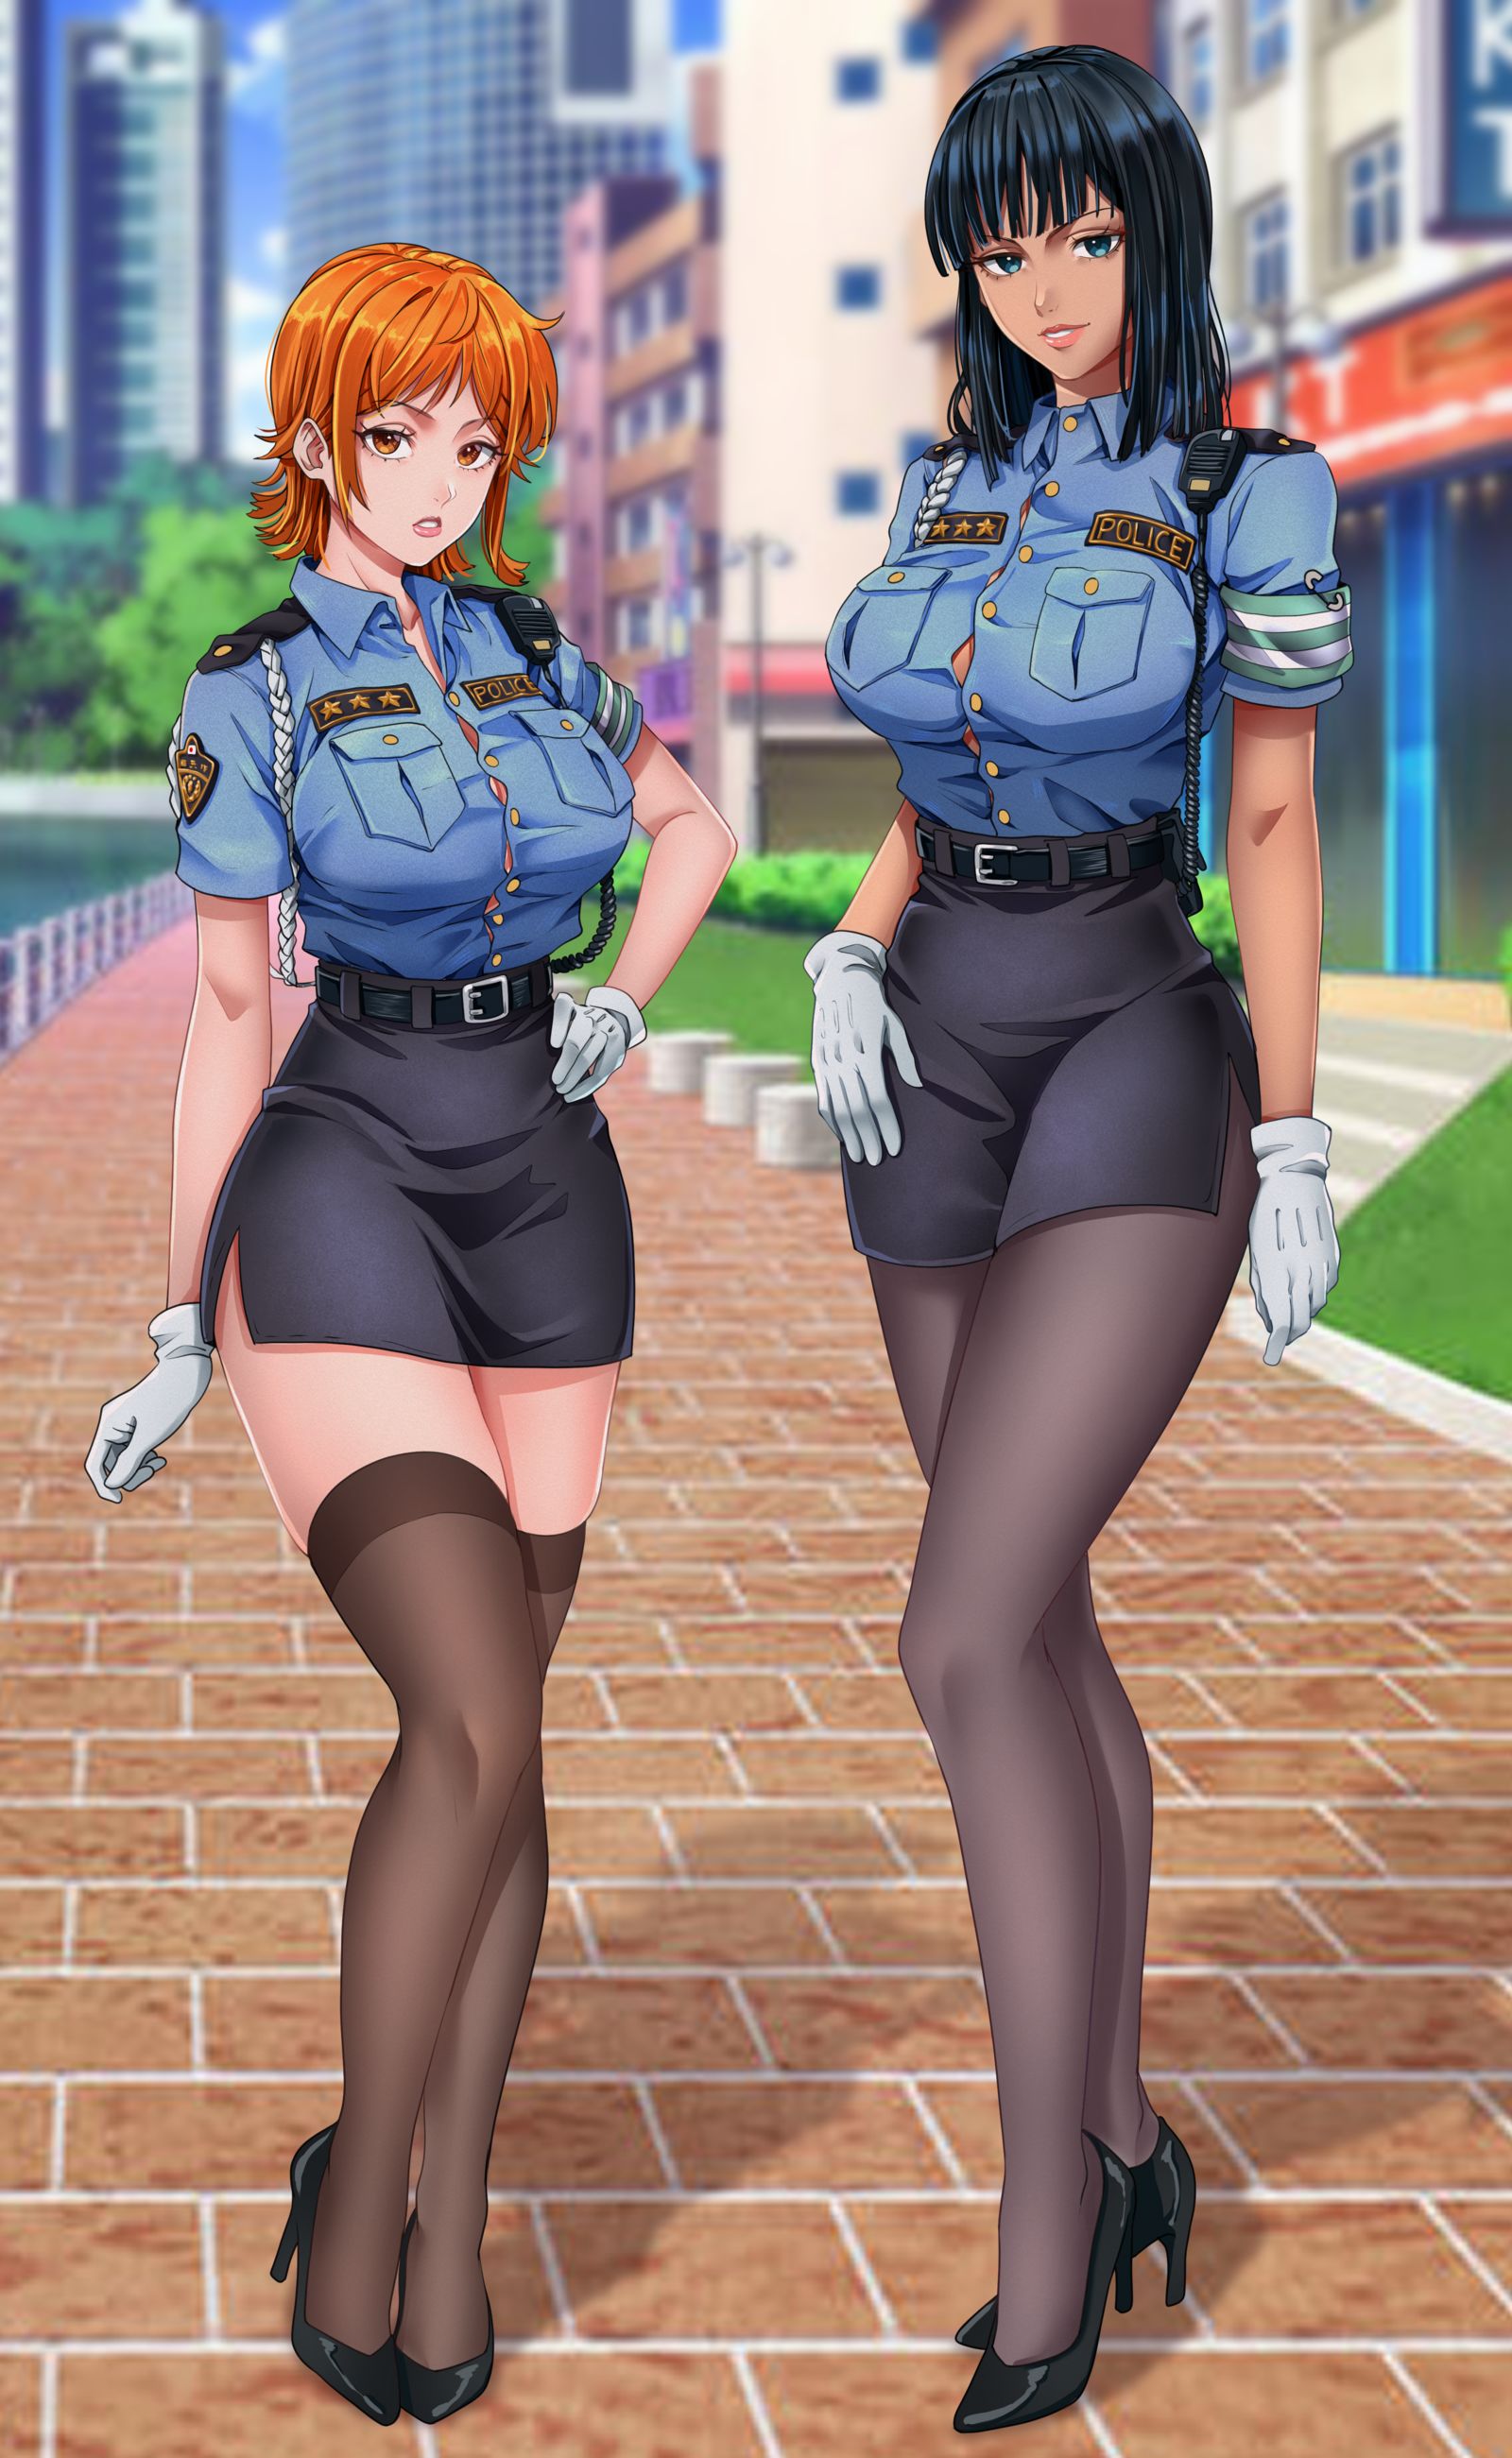 Police Nami & Robin插画图片壁纸